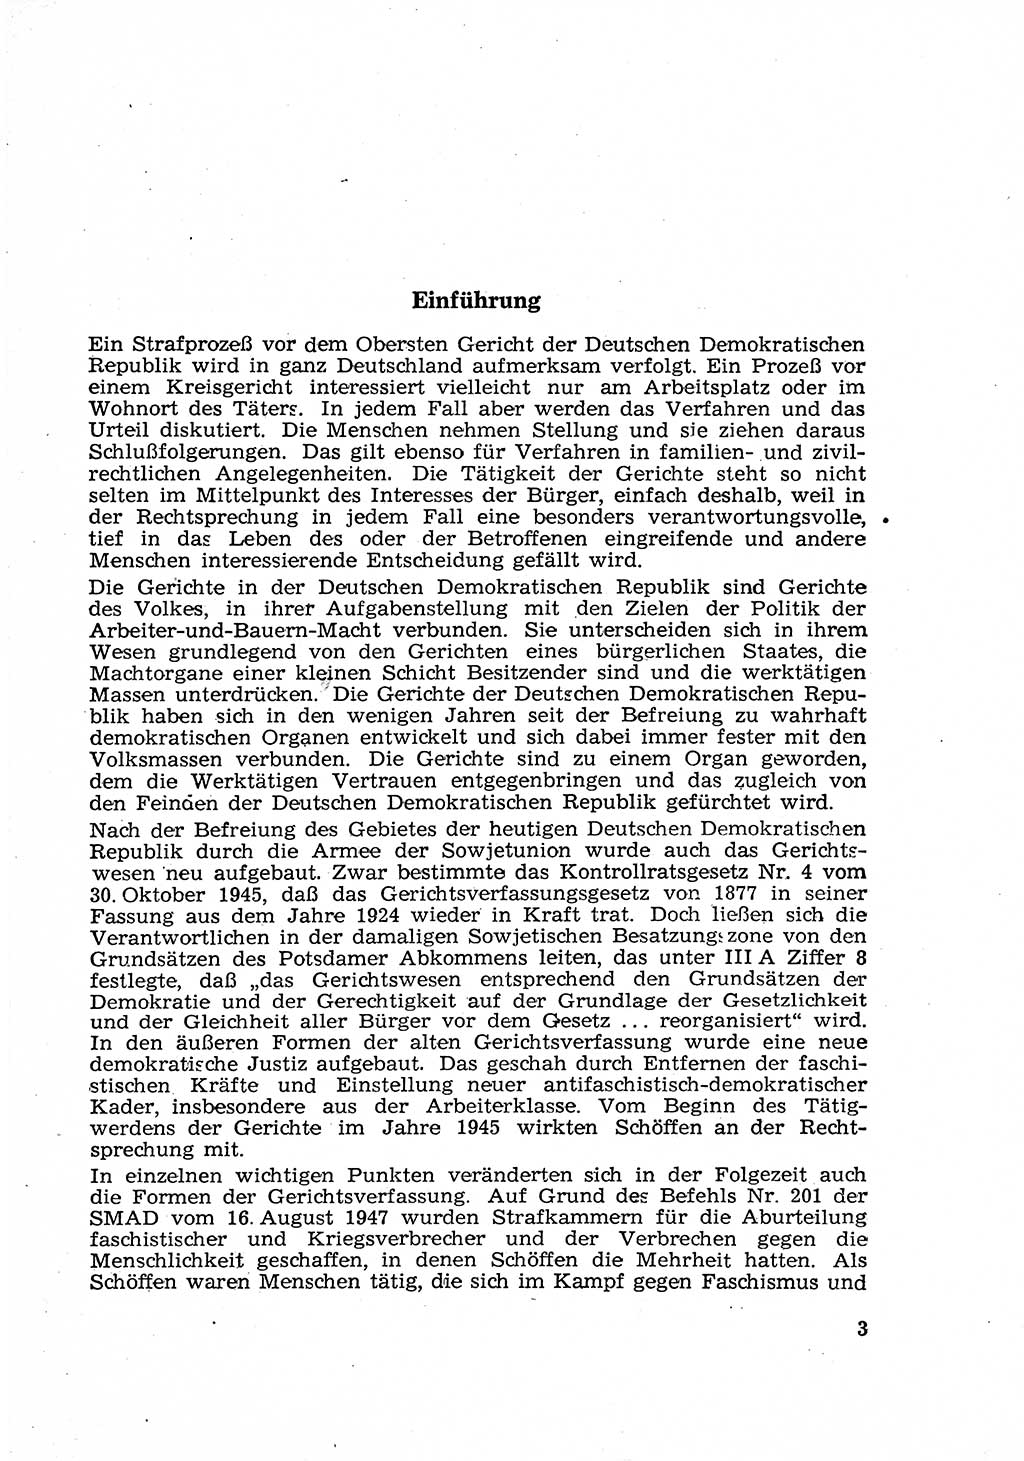 Gericht und Rechtsprechung in der Deutschen Demokratischen Republik (DDR) 1956, Seite 3 (Ger. Rechtspr. DDR 1956, S. 3)